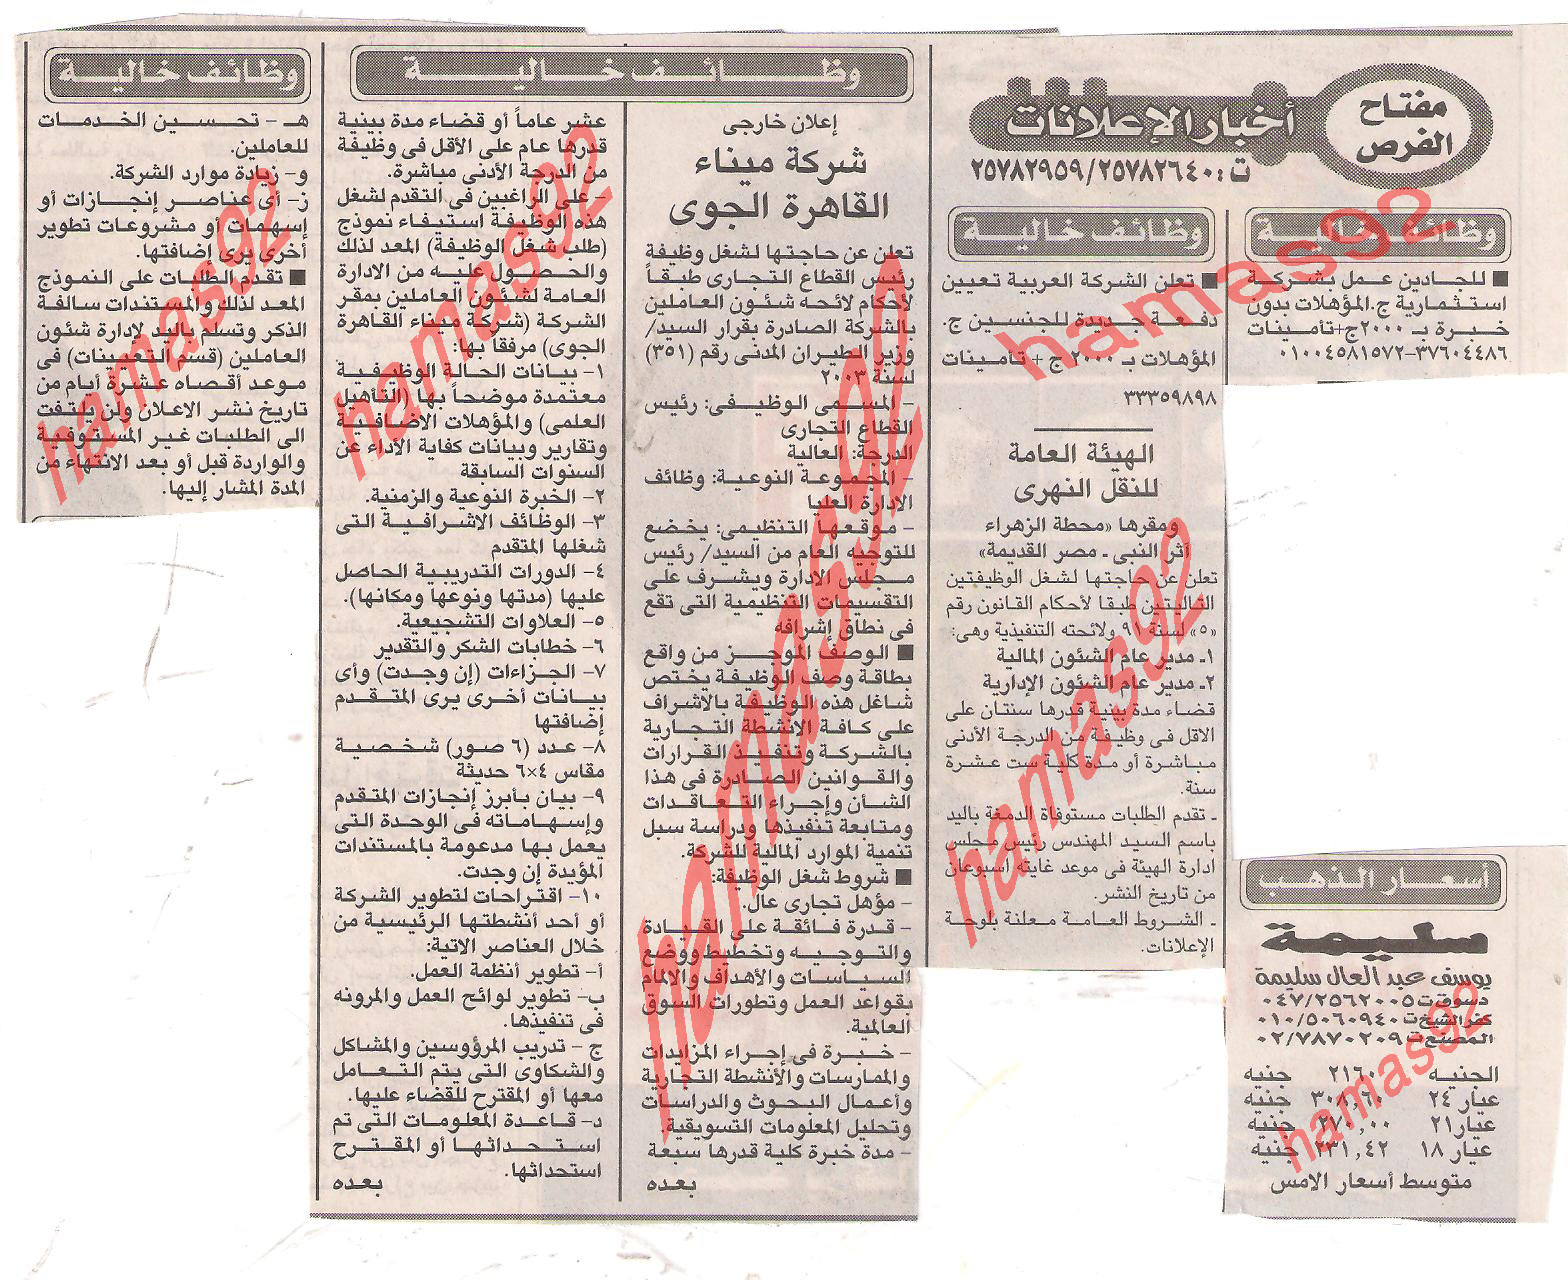  مصر الاربعاء 28\12\2011 وظائف  جريدة الاخبار  Picture+001